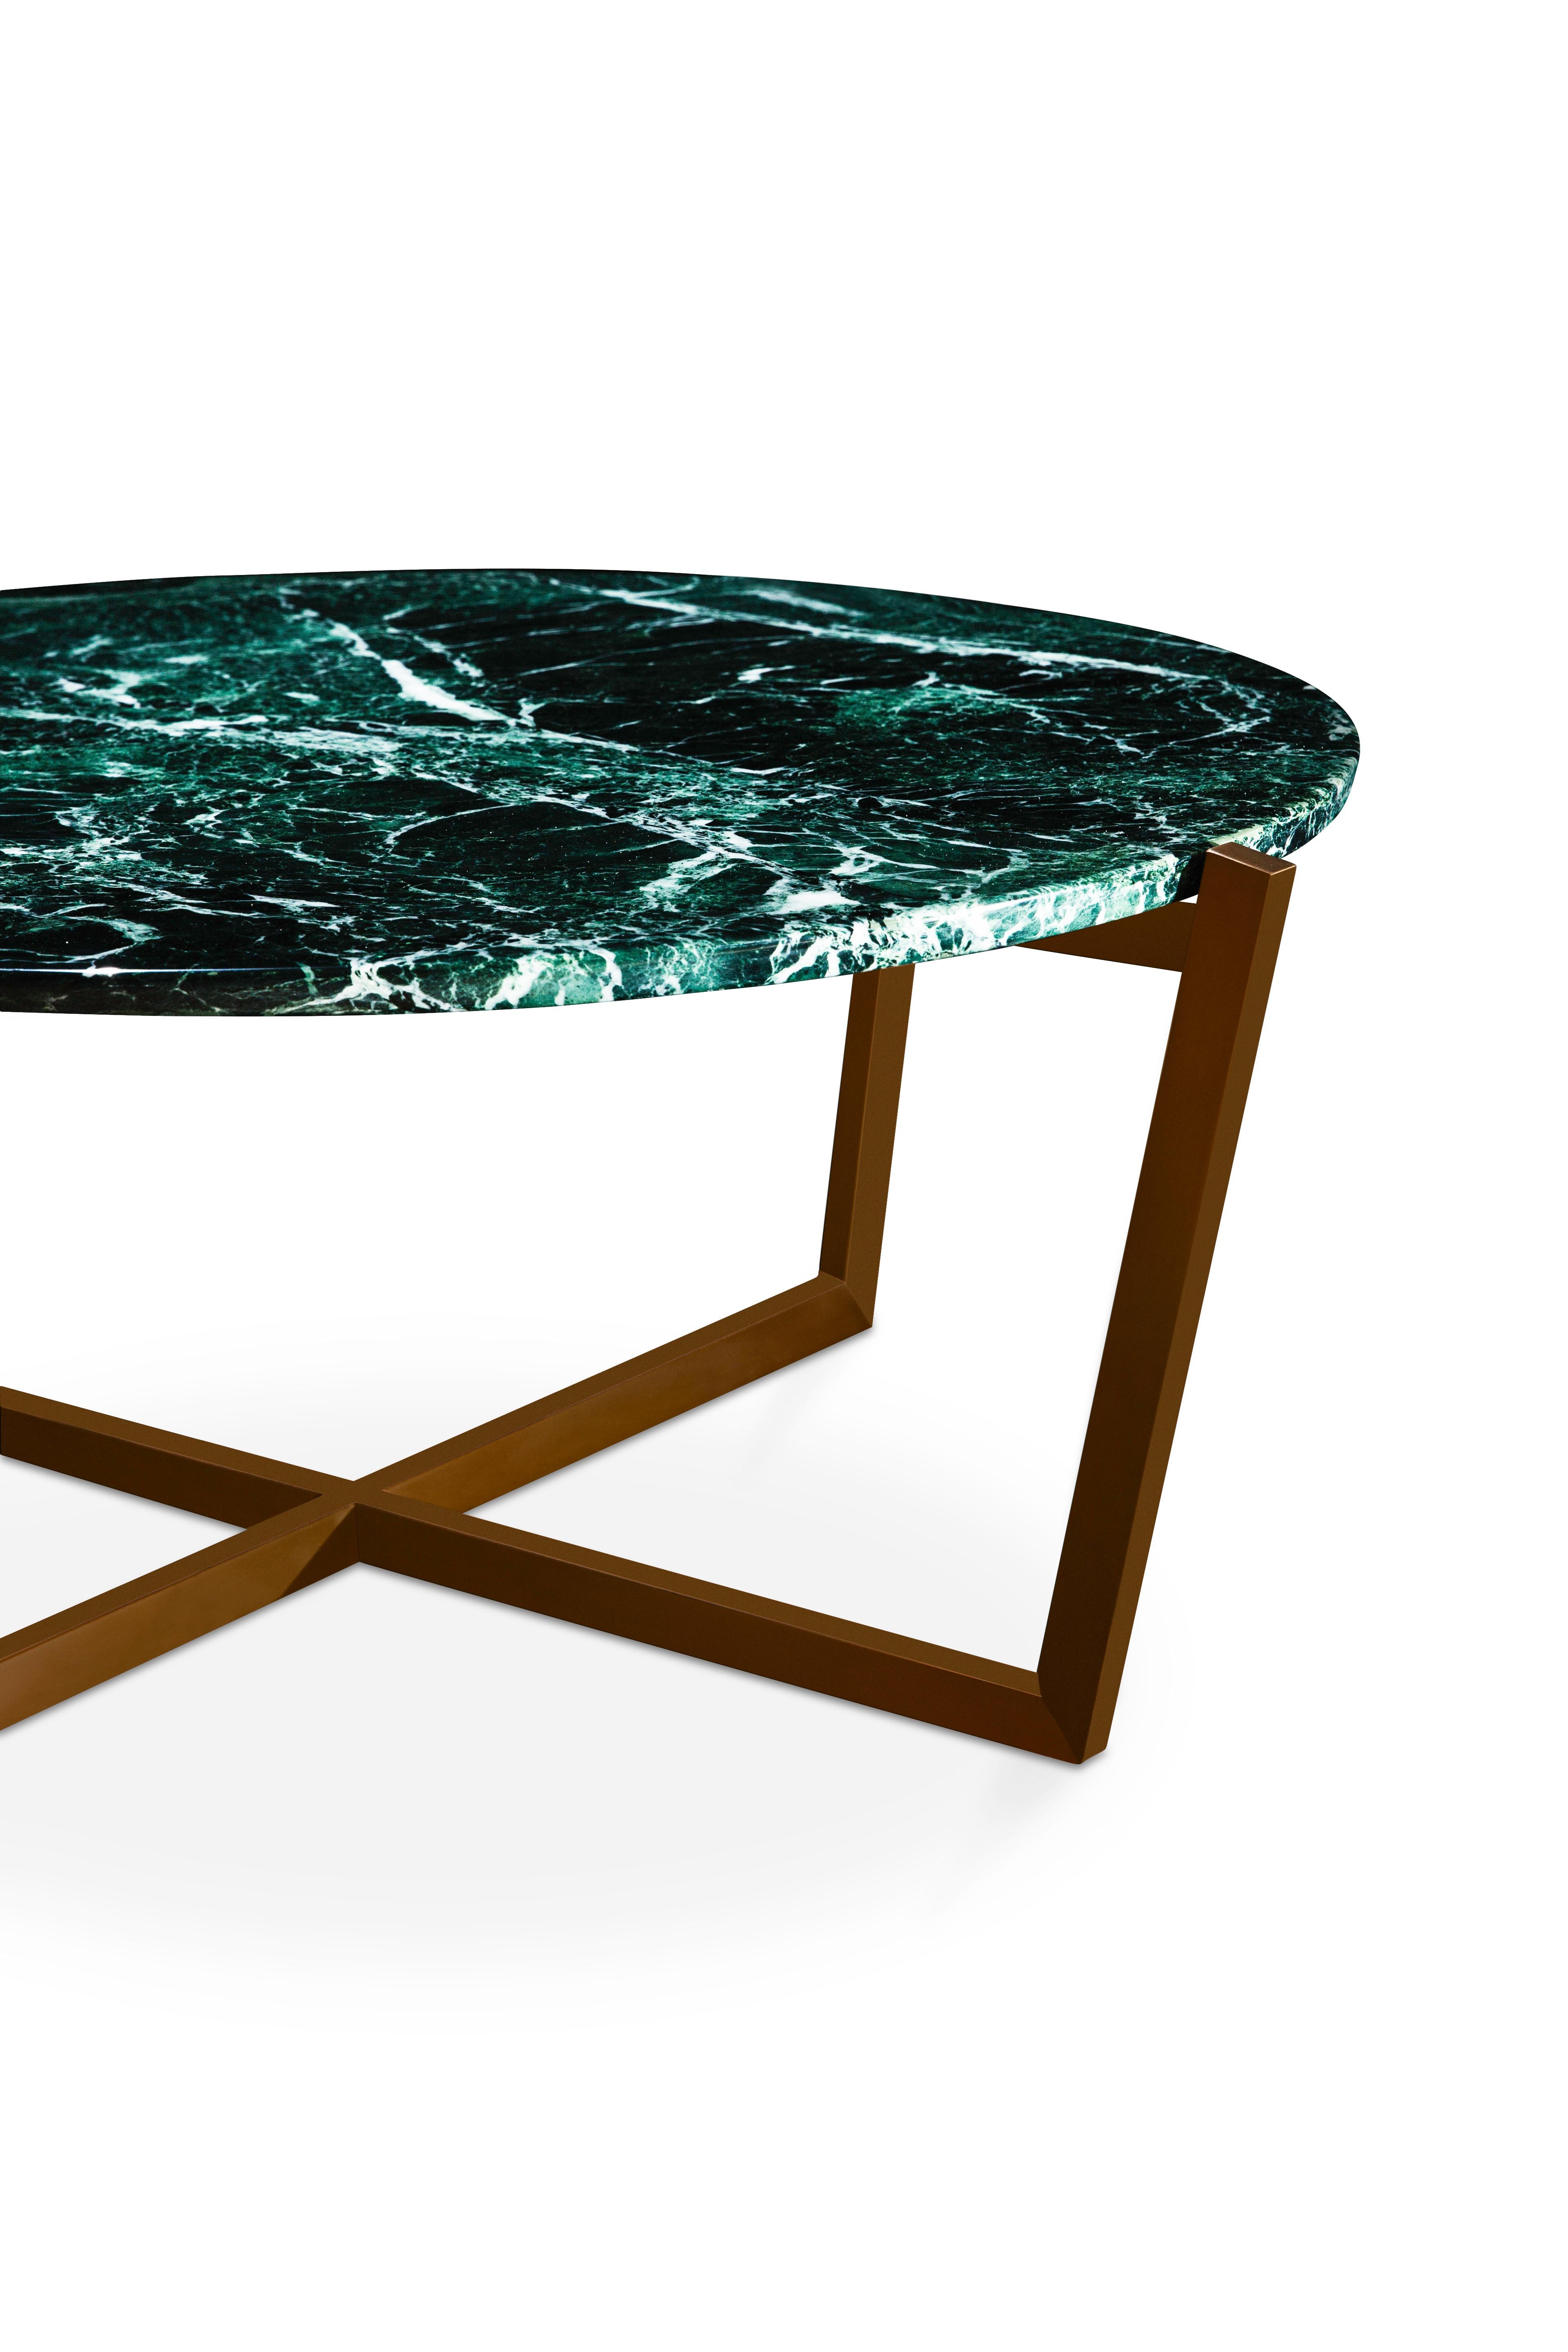 Fait main Table basse NORDST EMMA, marbre gris Rain italien, design moderne danois, nouveau en vente